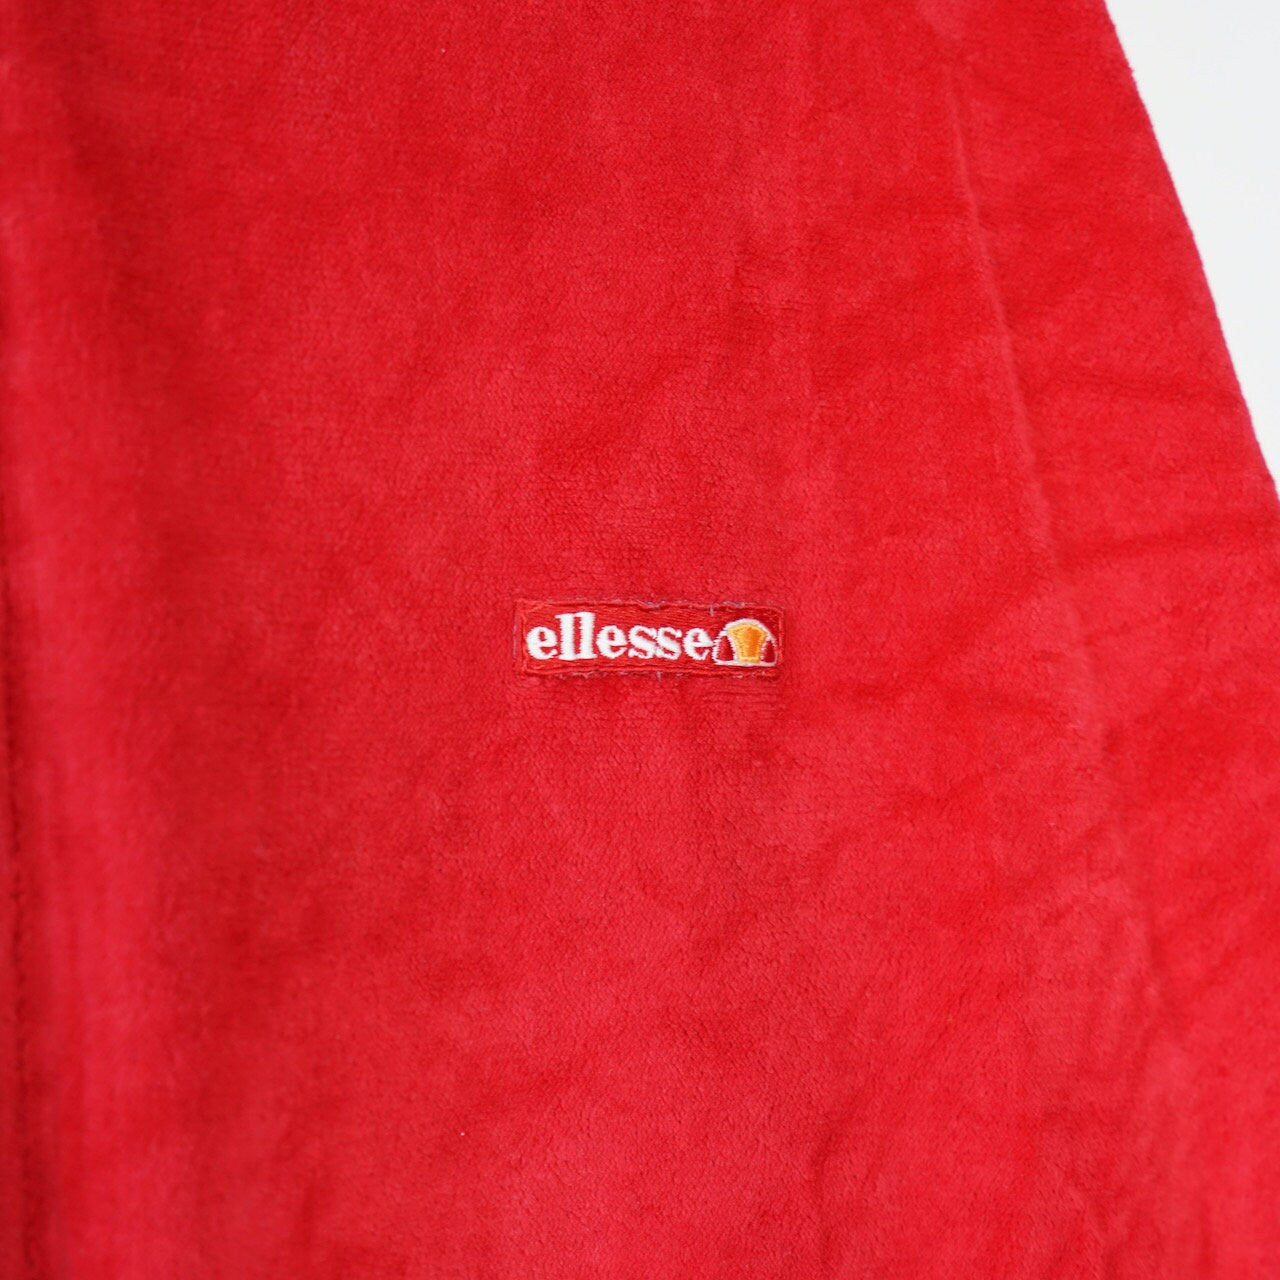 Vintage red Ellesse Sport Jacket Size L-XL